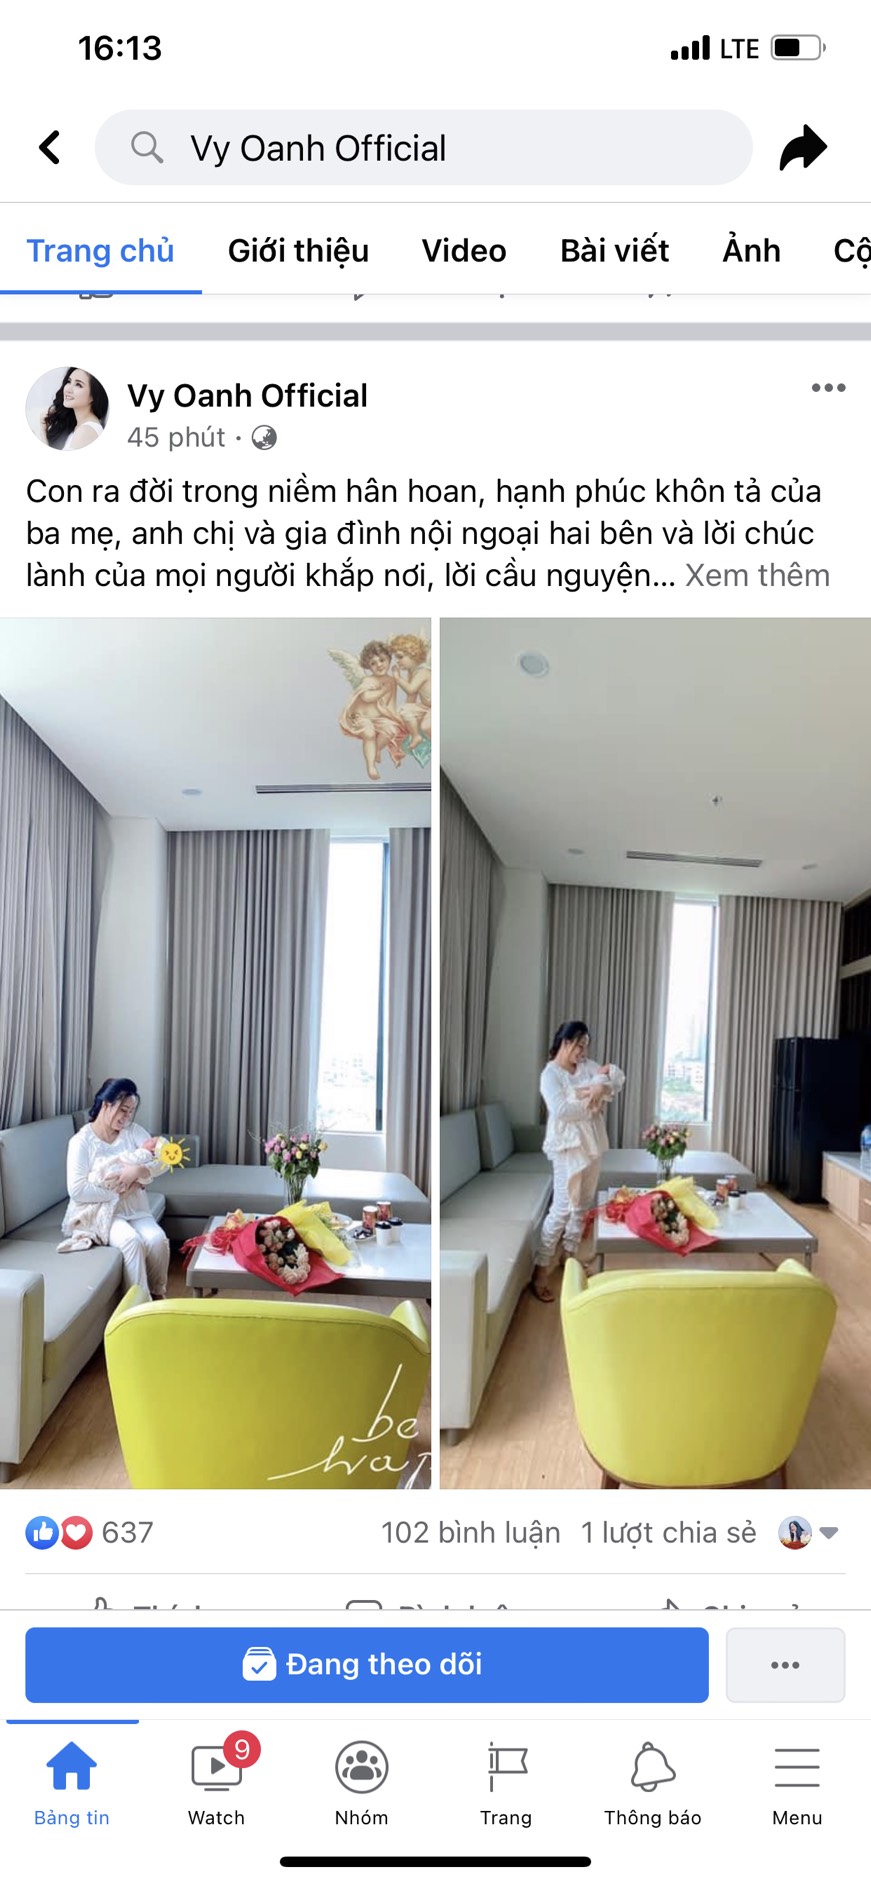 Bài viết vừa được quản lý Vy Oanh chia sẻ trên trang cá nhân của nữ ca sĩ cách đây ít phút